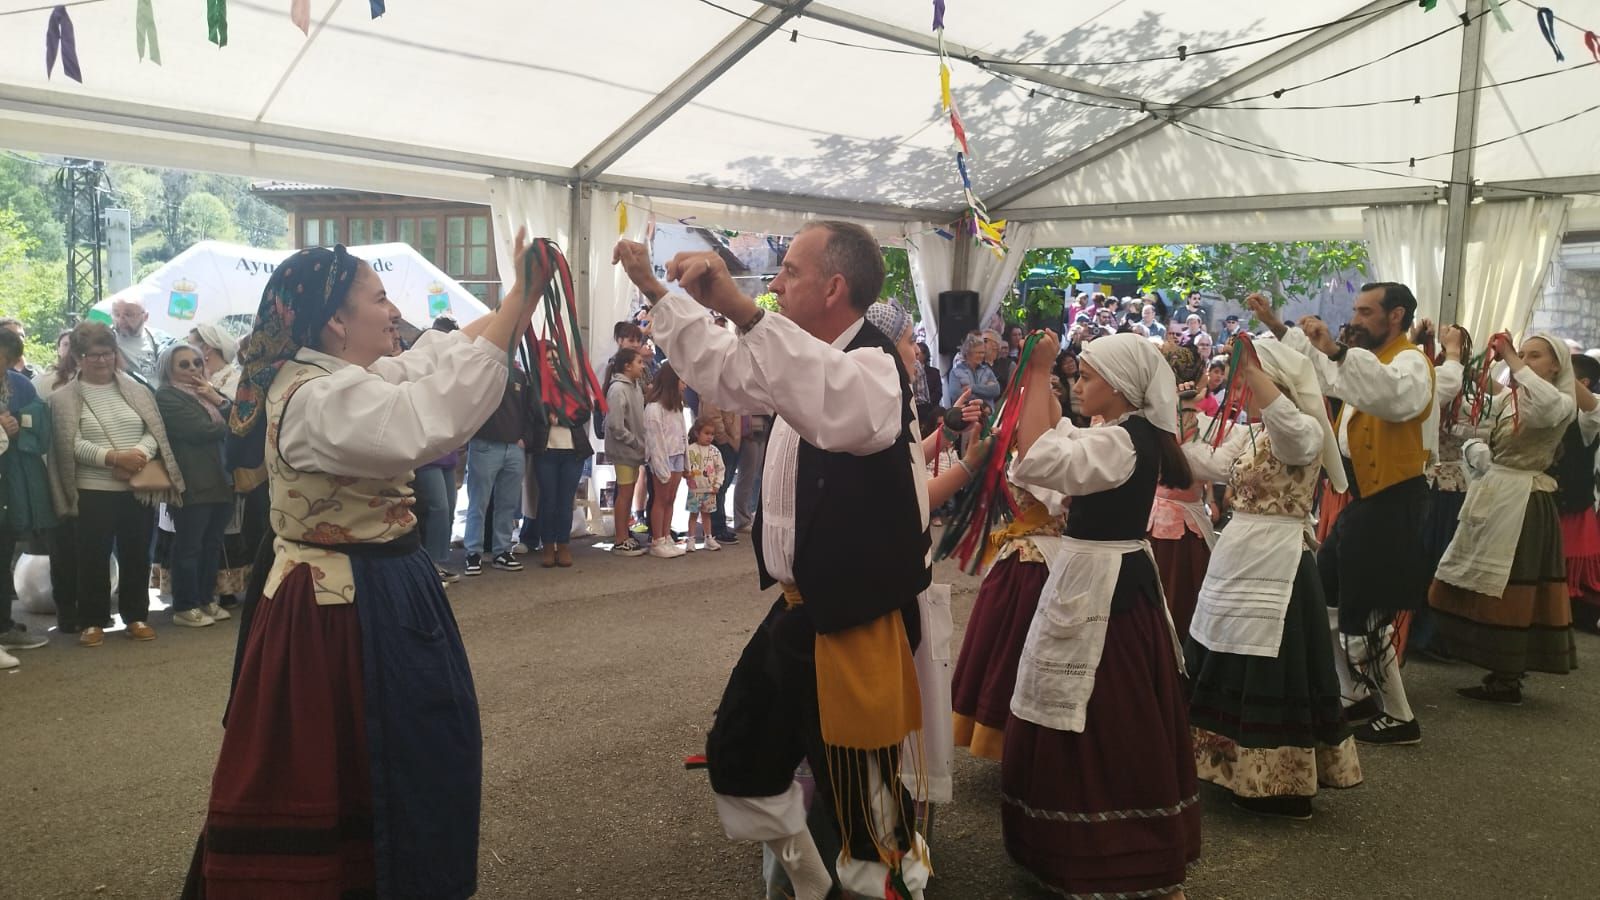 Arangas de Cabrales despliega su historia y tradiciones en el IV Festival Comunitario del concejo